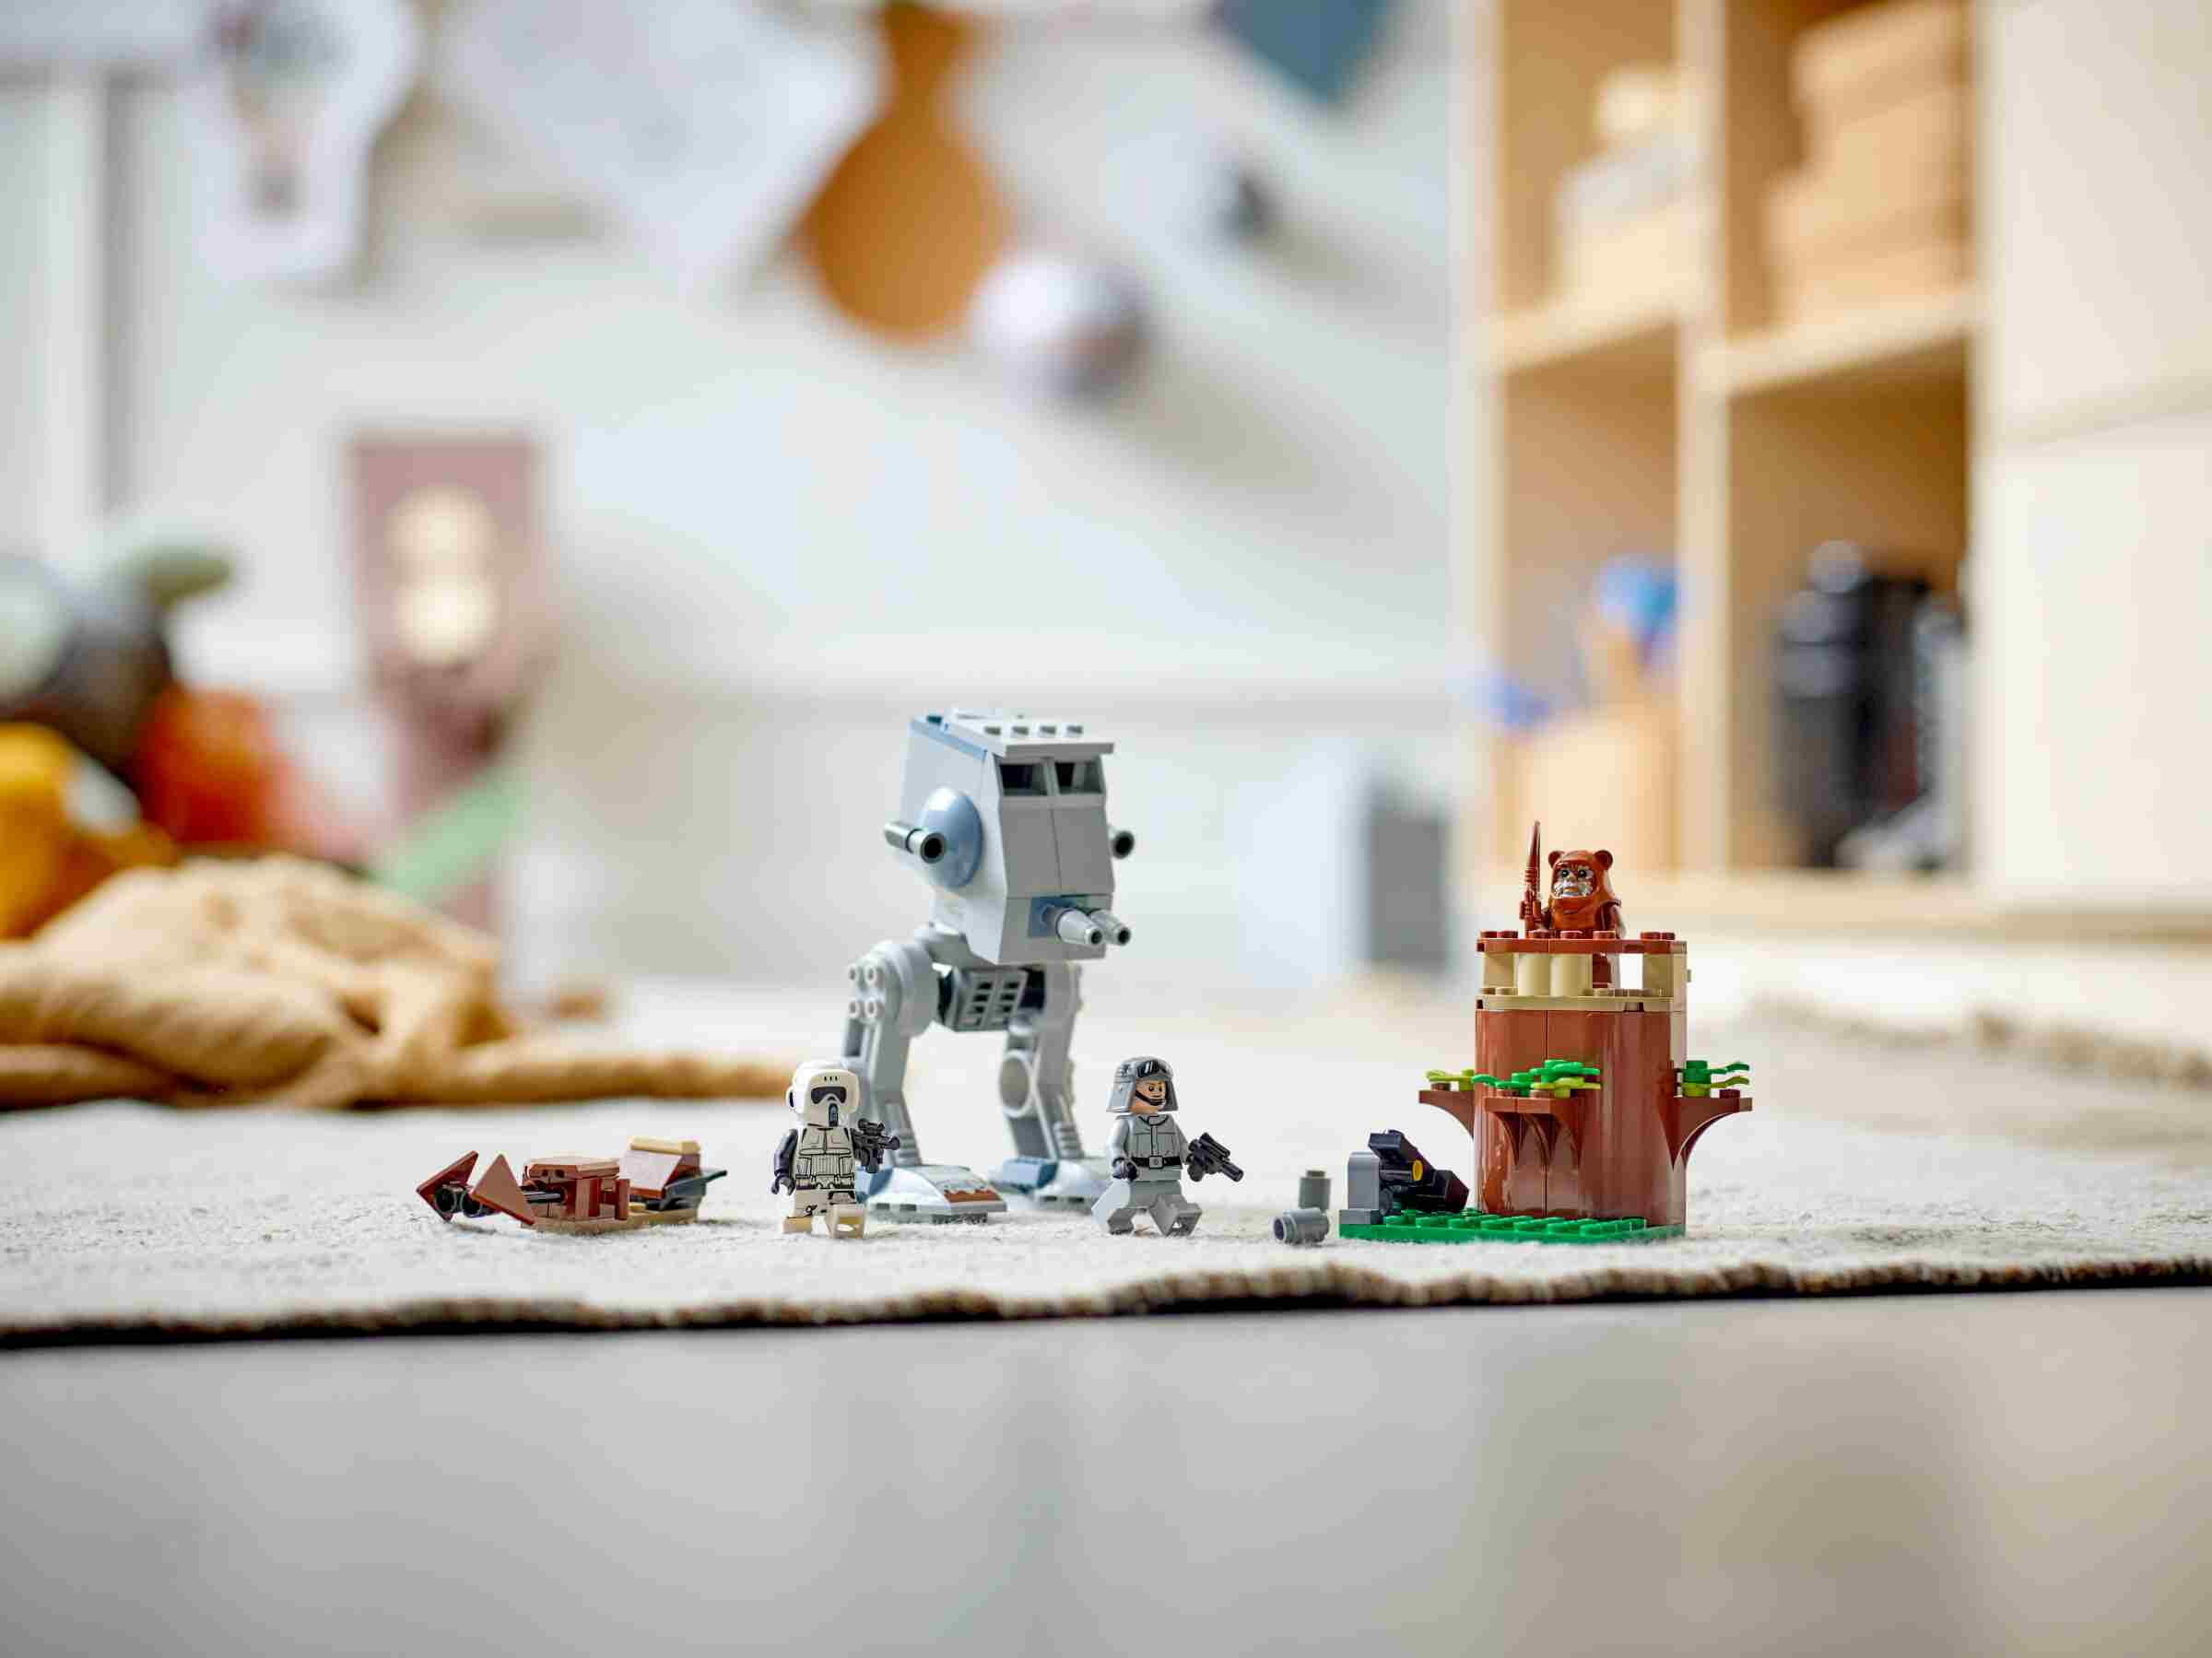 LEGO 75332 Star Wars at-ST, Bauspielzeug für Vorschulkinder